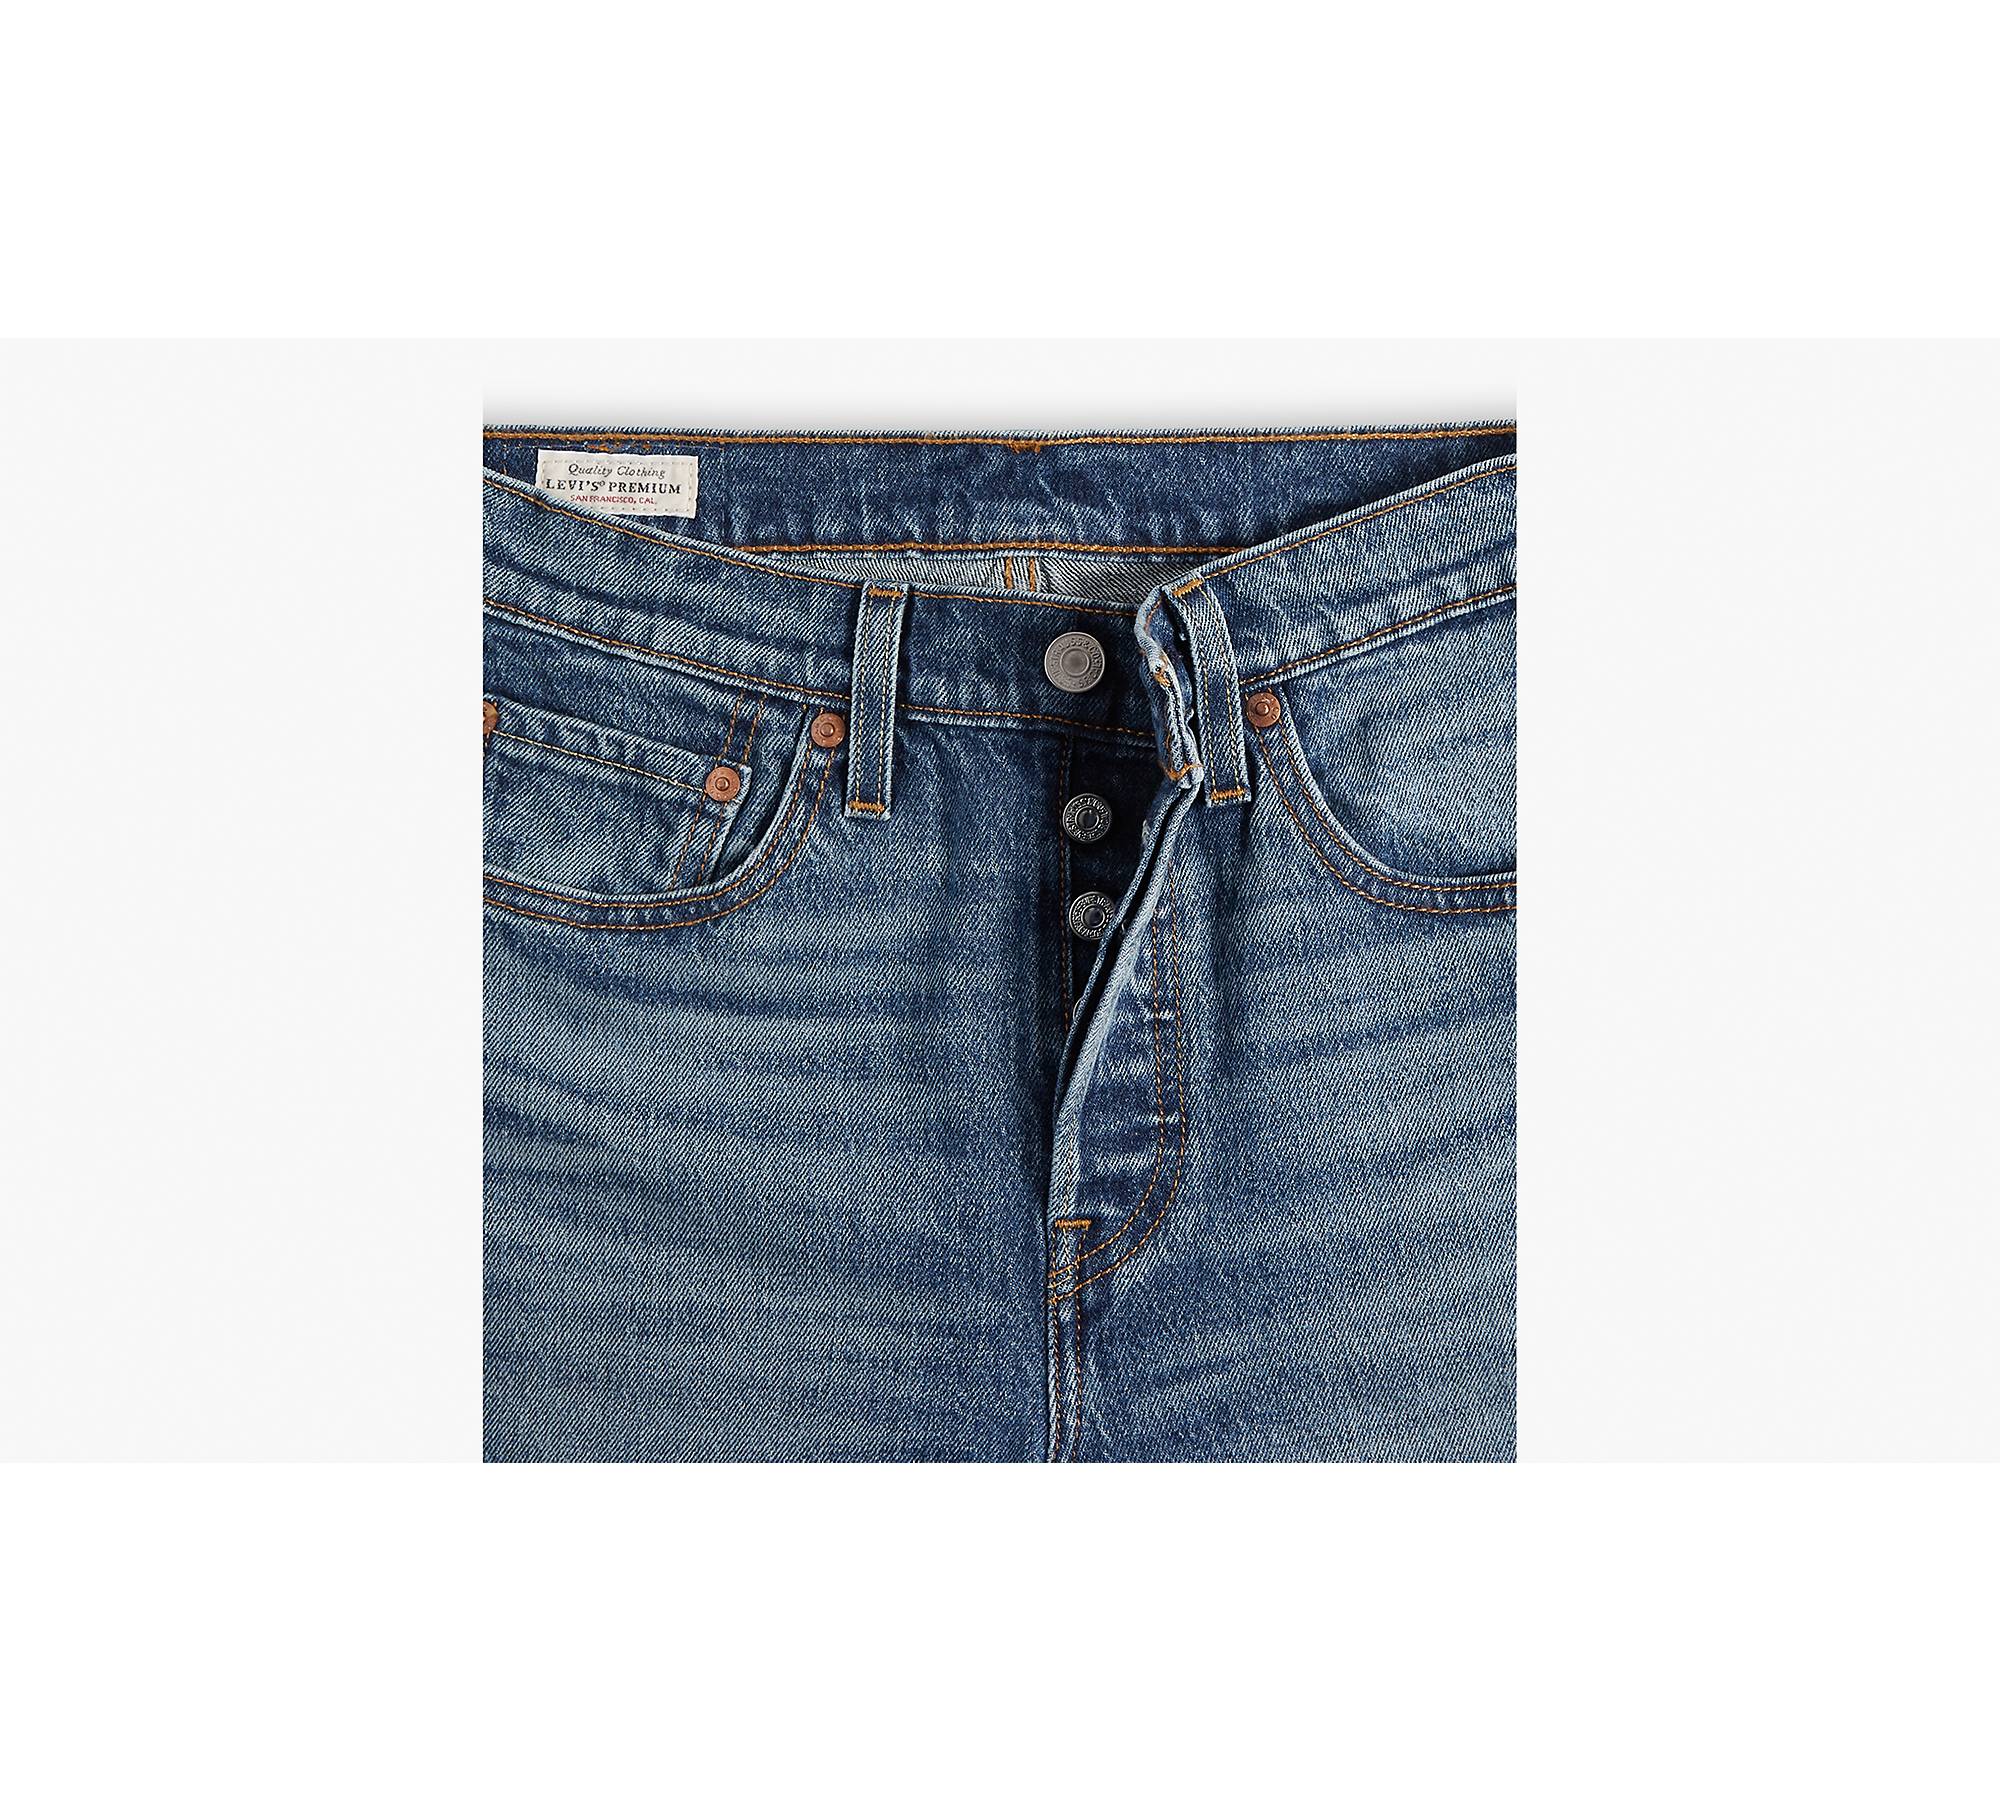 LEVI'S Womens Eve Capri Jeans W31 L17 Blue Linen, Vintage & Second-Hand  Clothing Online